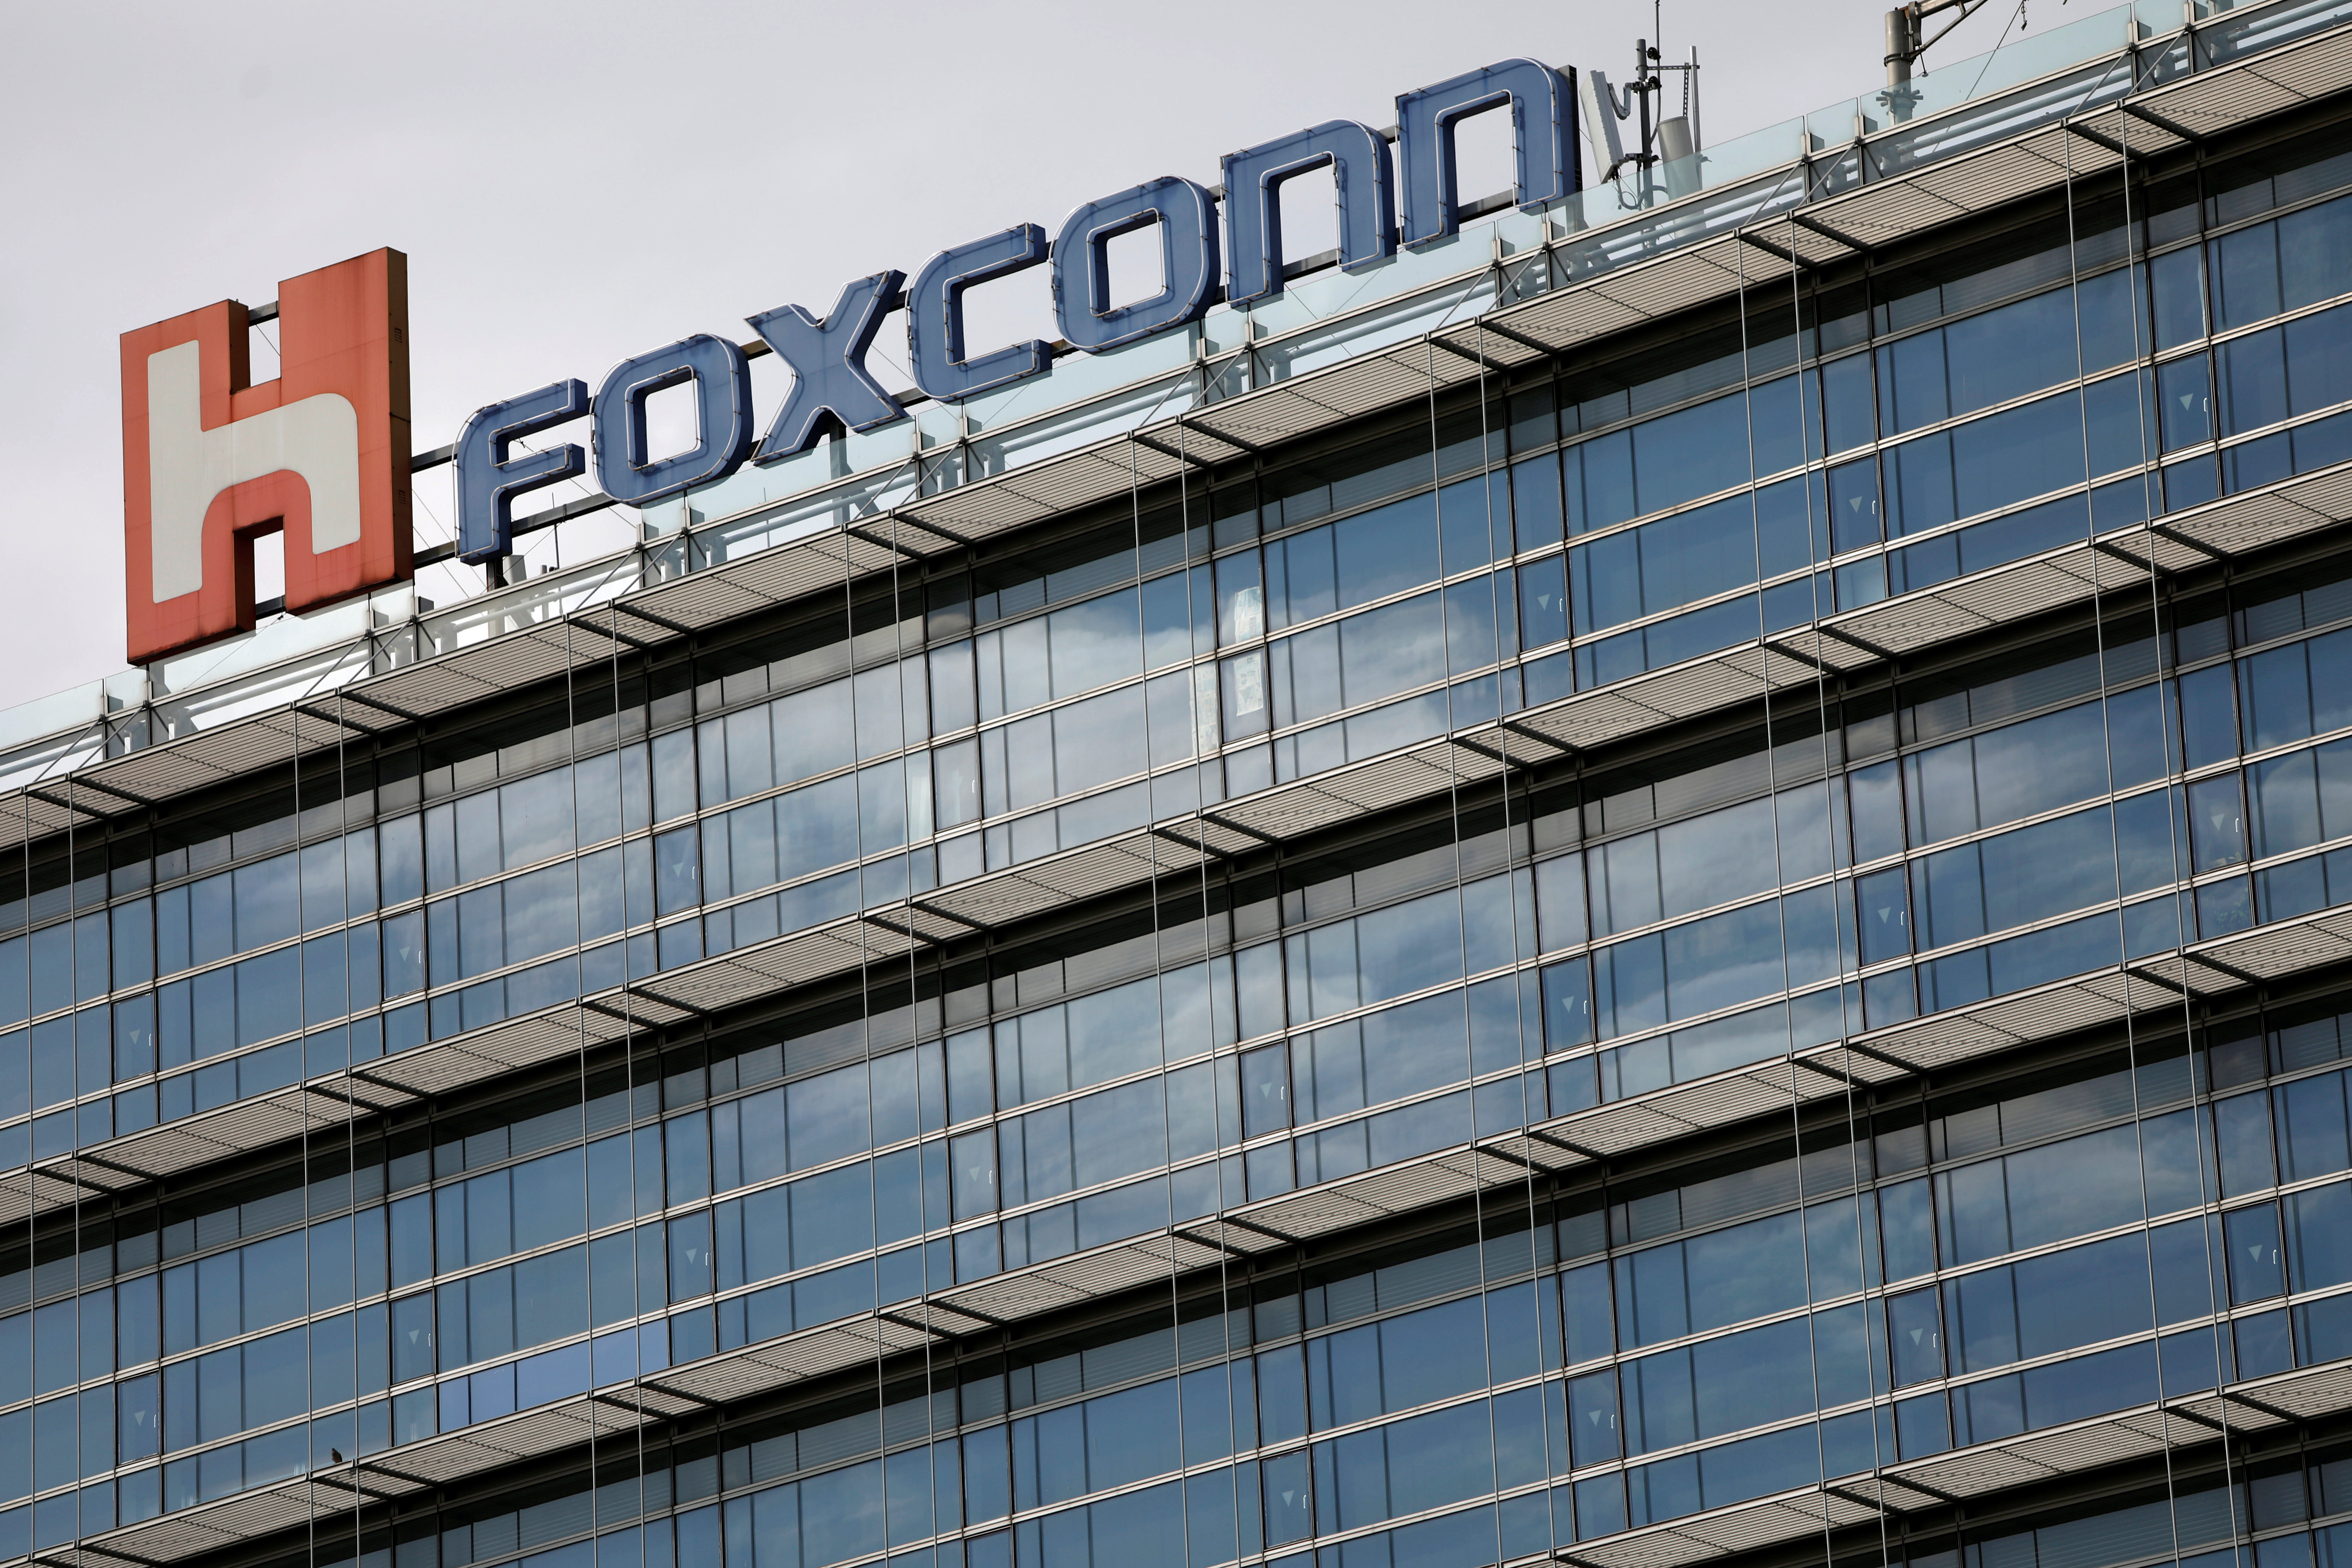 The logo of Foxconn